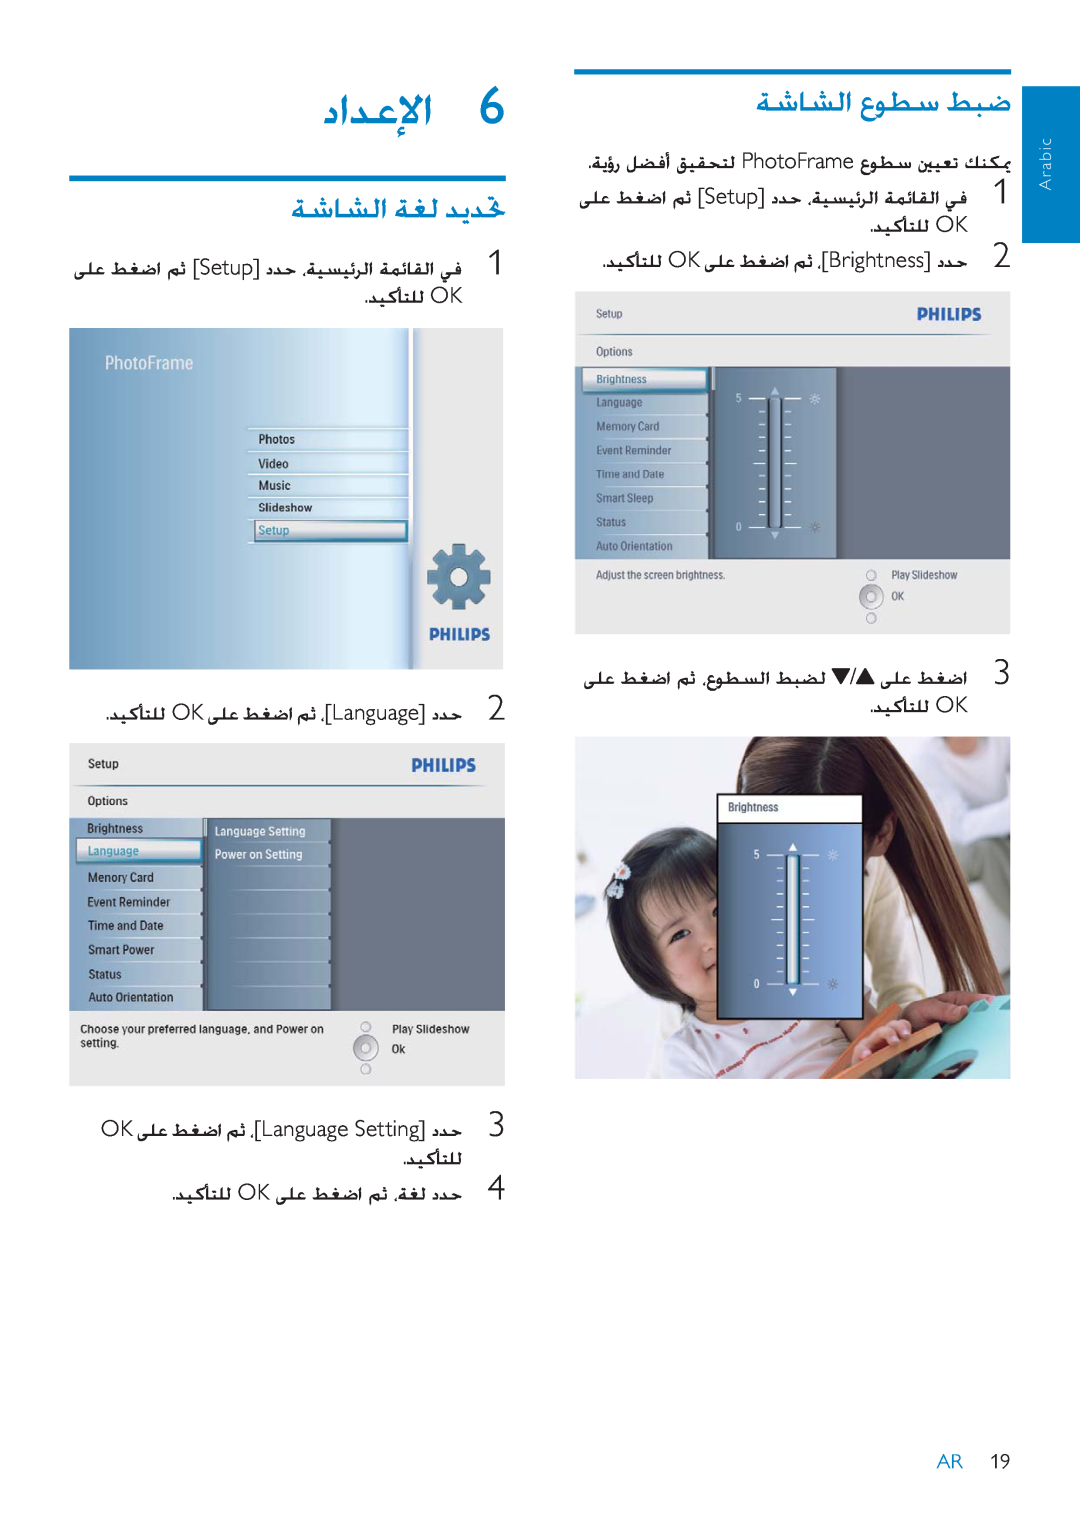 Philips SPF2007 ȢȚǋŸȁȚ, ǀŵƾƪŽȚȬǞƭŴǓƃǤ, ǀŵƾƪŽȚǀưŽǋƁǋƎ, OKǟƴŸǓưǤȚǛŰȆLanguage SettingȢǋŲ, ǋƸżƺƄƴŽ OK, Arabic 